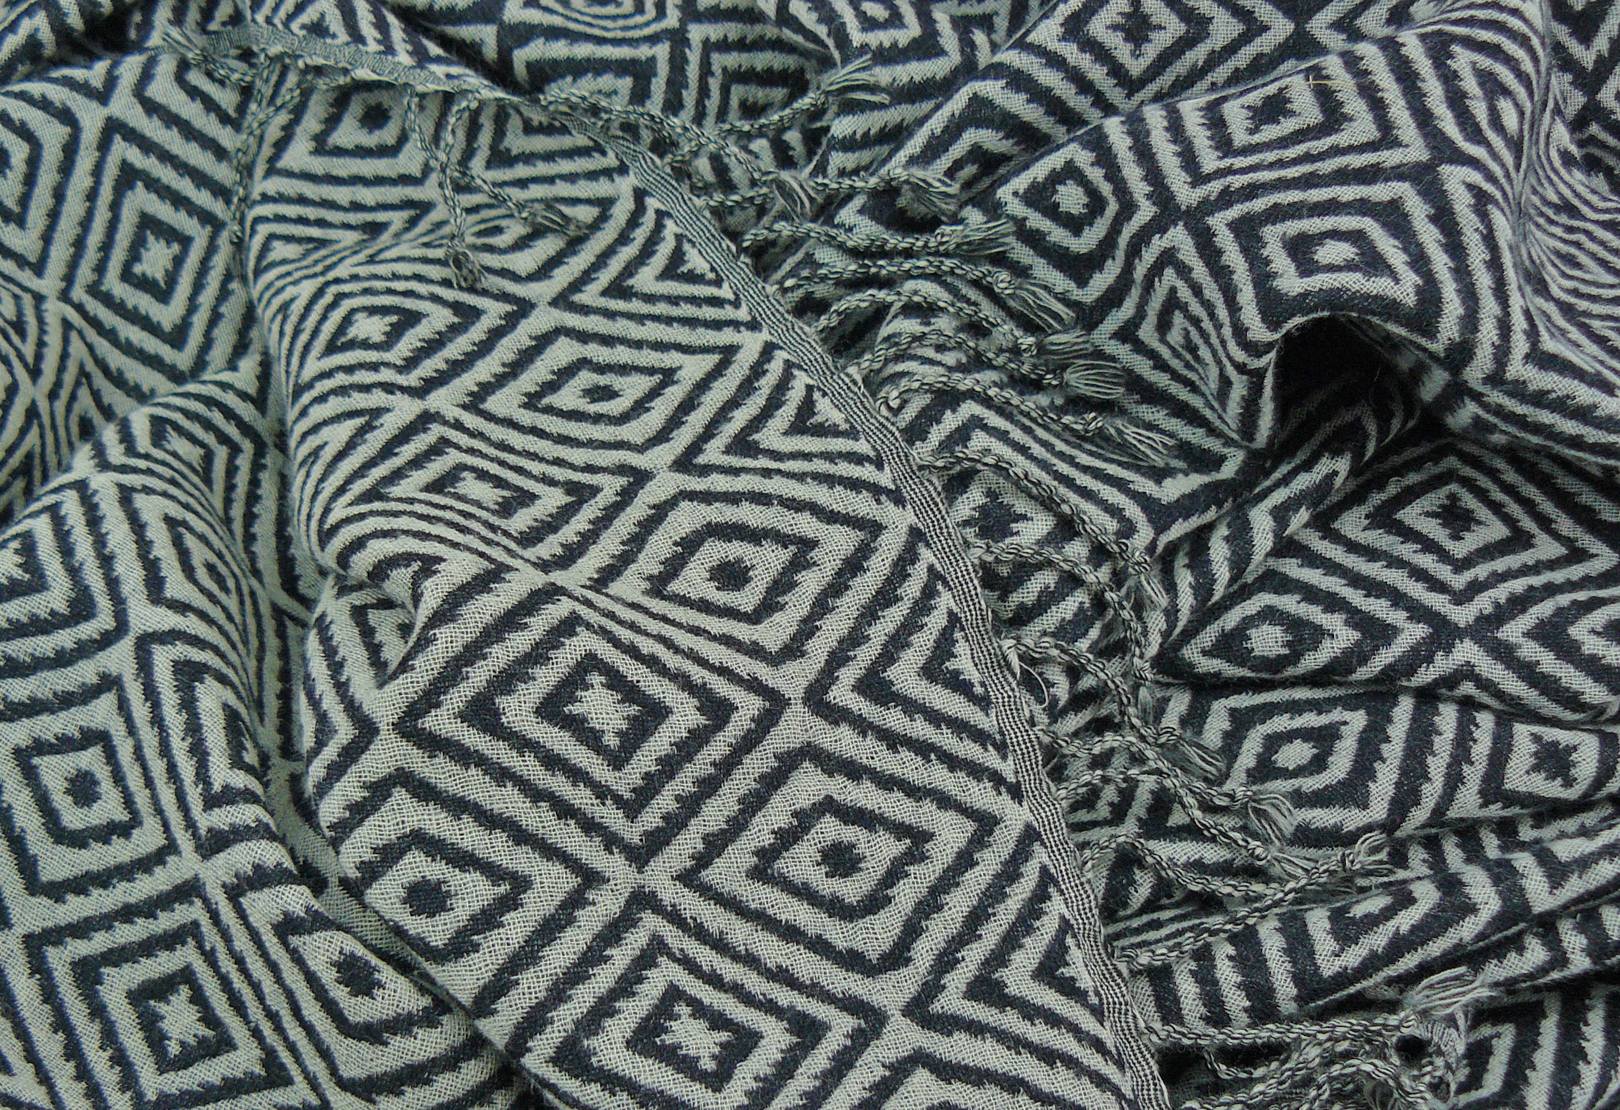 Maschinell gewebte indische Wolldecke mit Rauten in schwarz-weiß